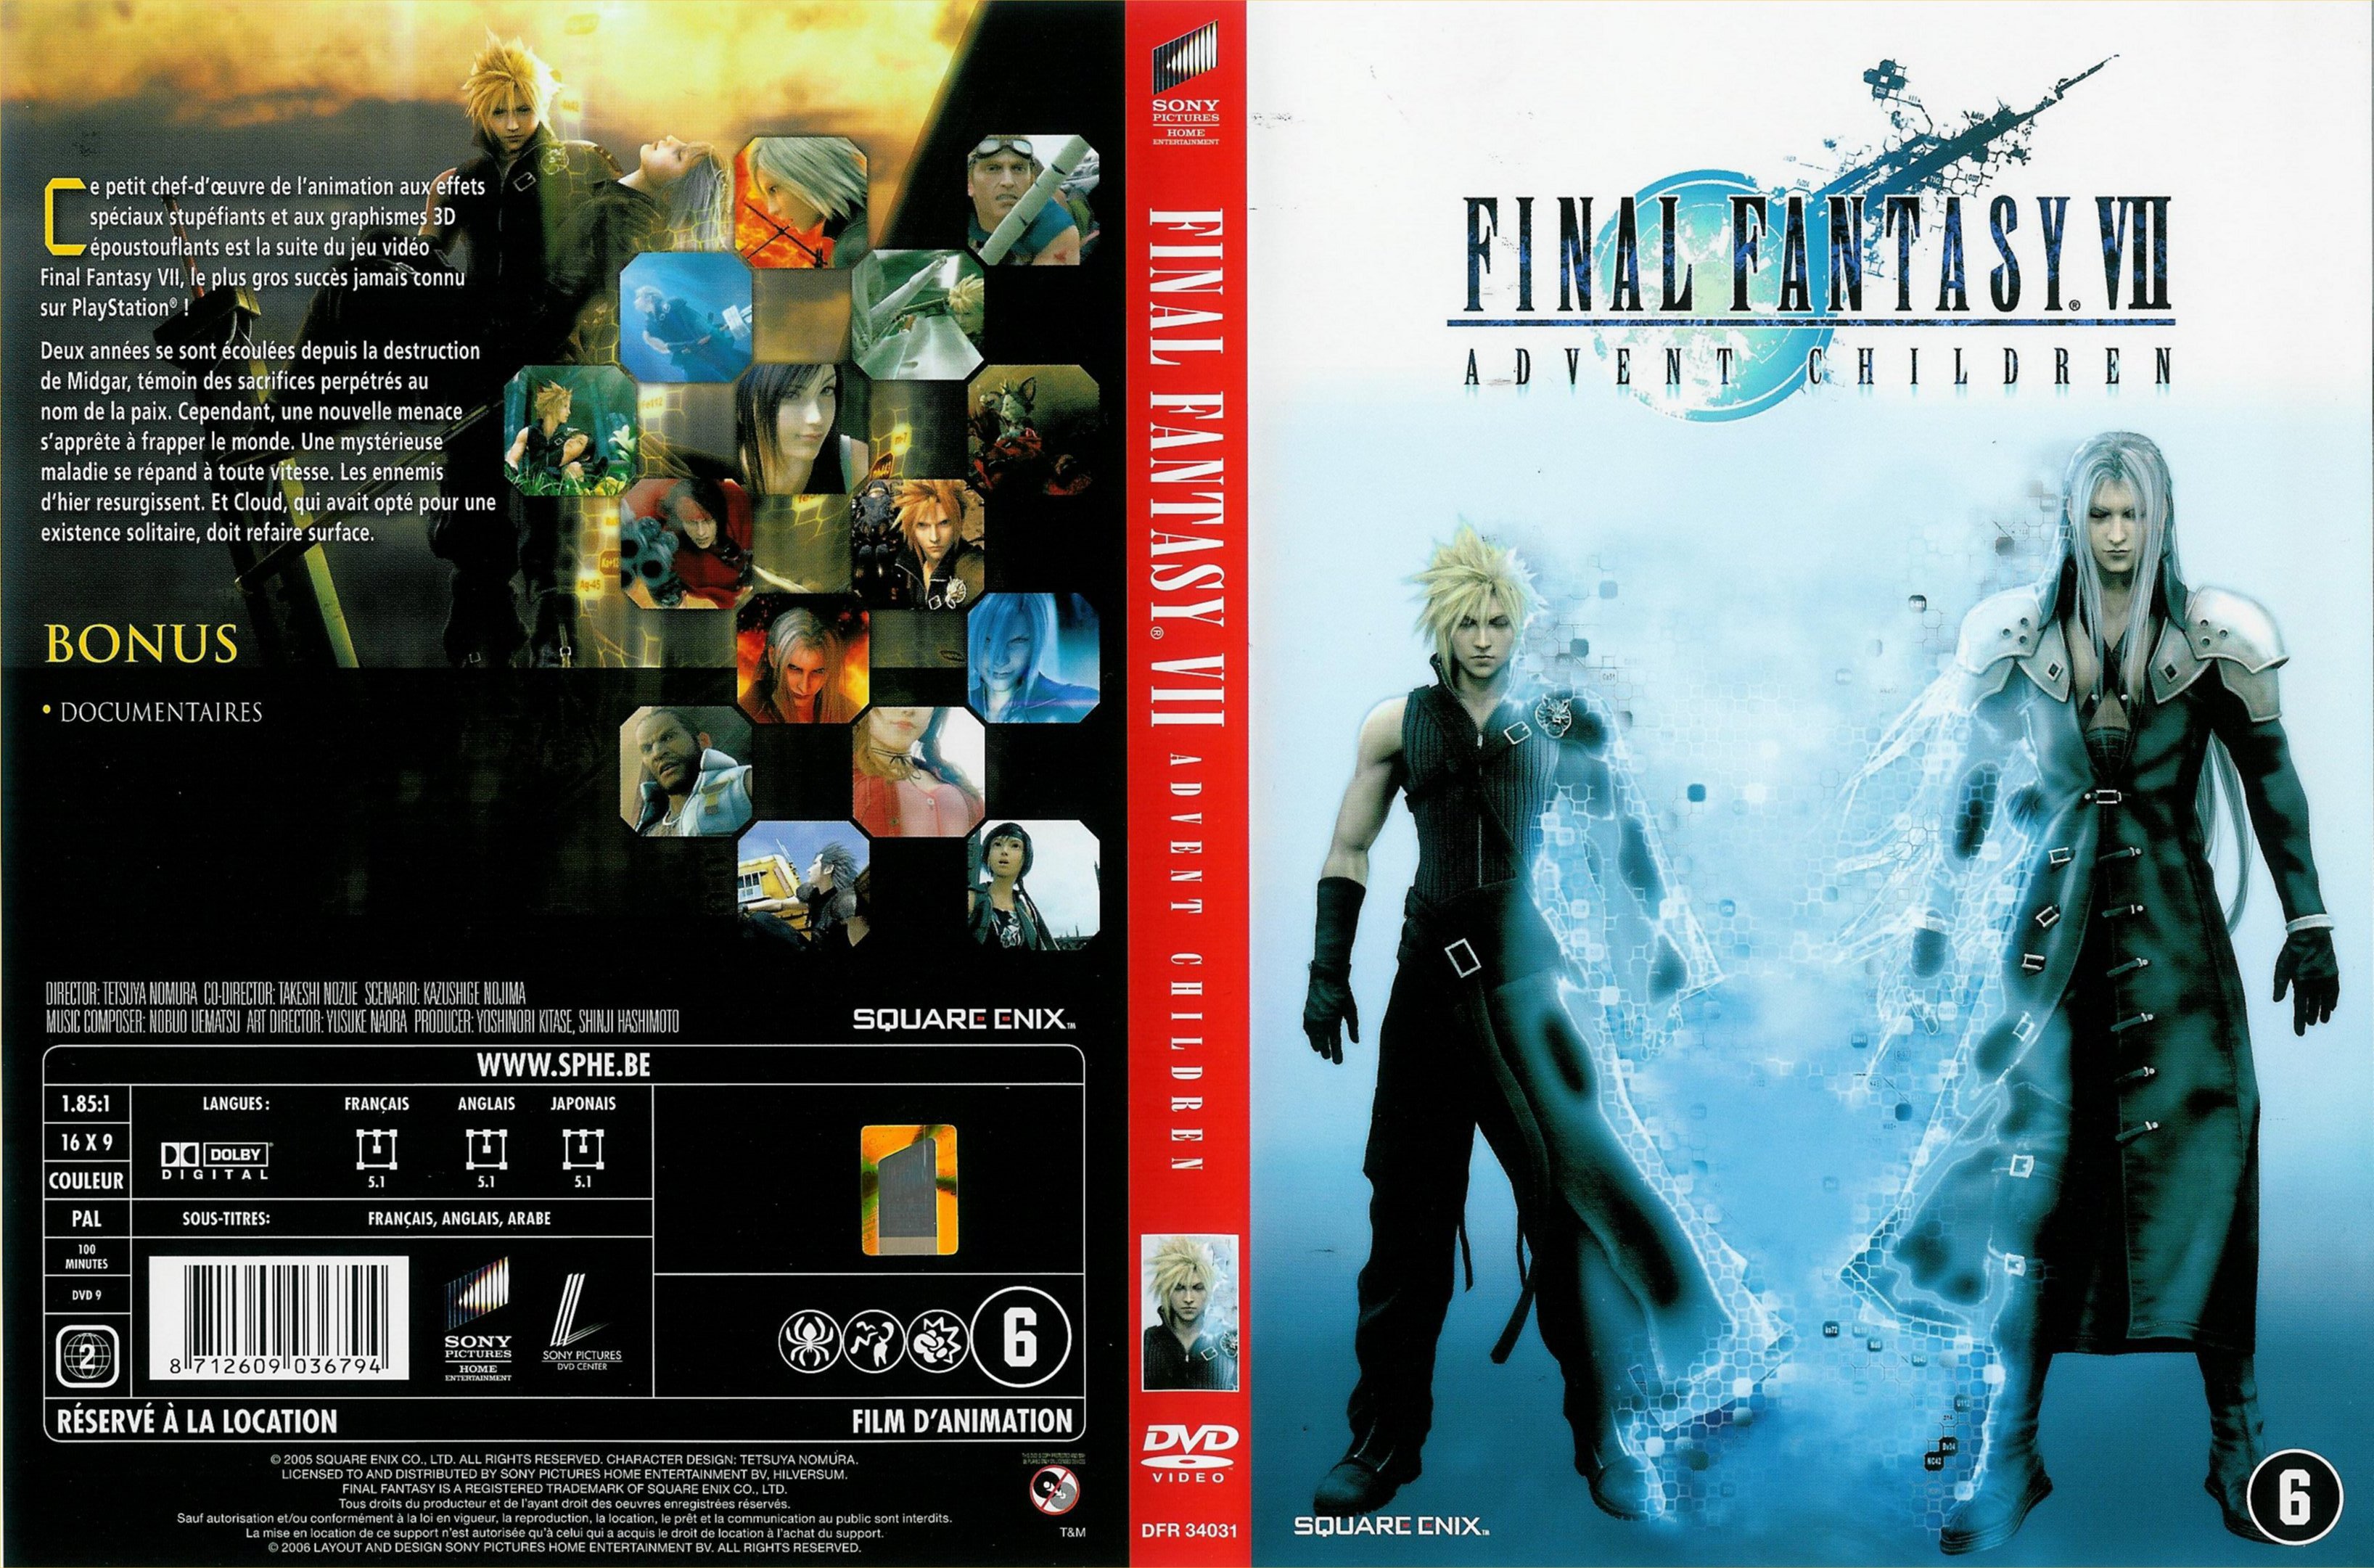 Jaquette DVD Final Fantasy VII Advent Children v3